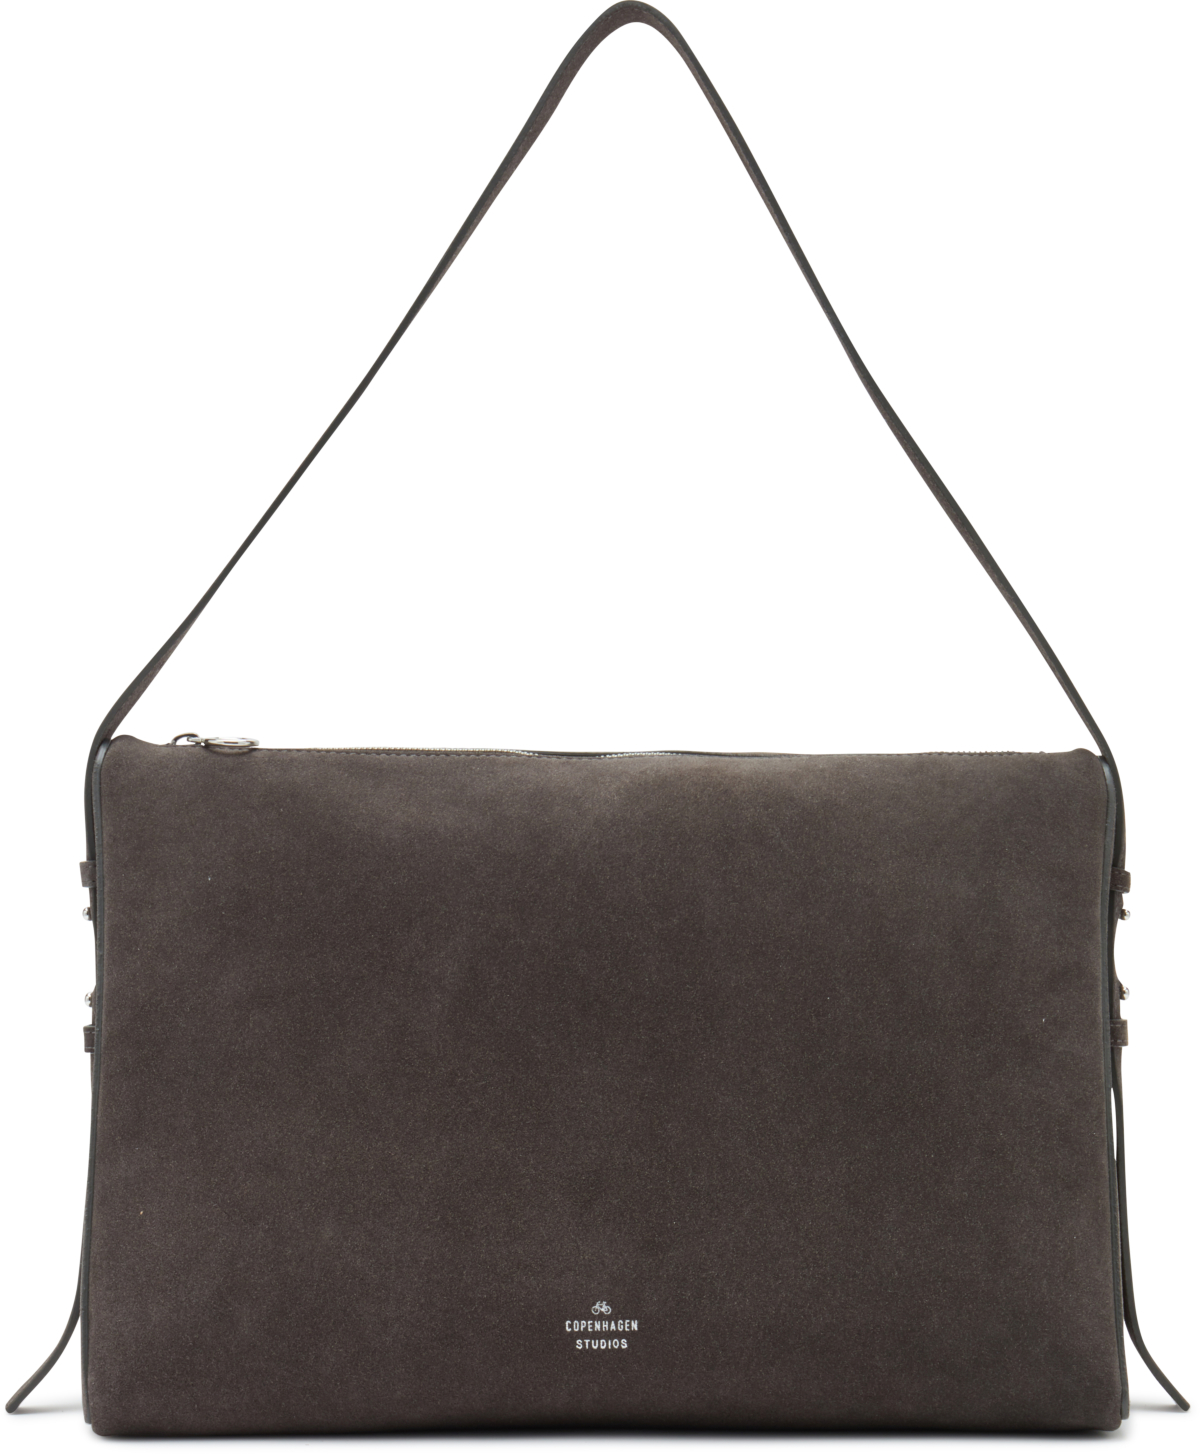 copenhagen Carryall Handtasche mit einer kantigen Silhouette 441824